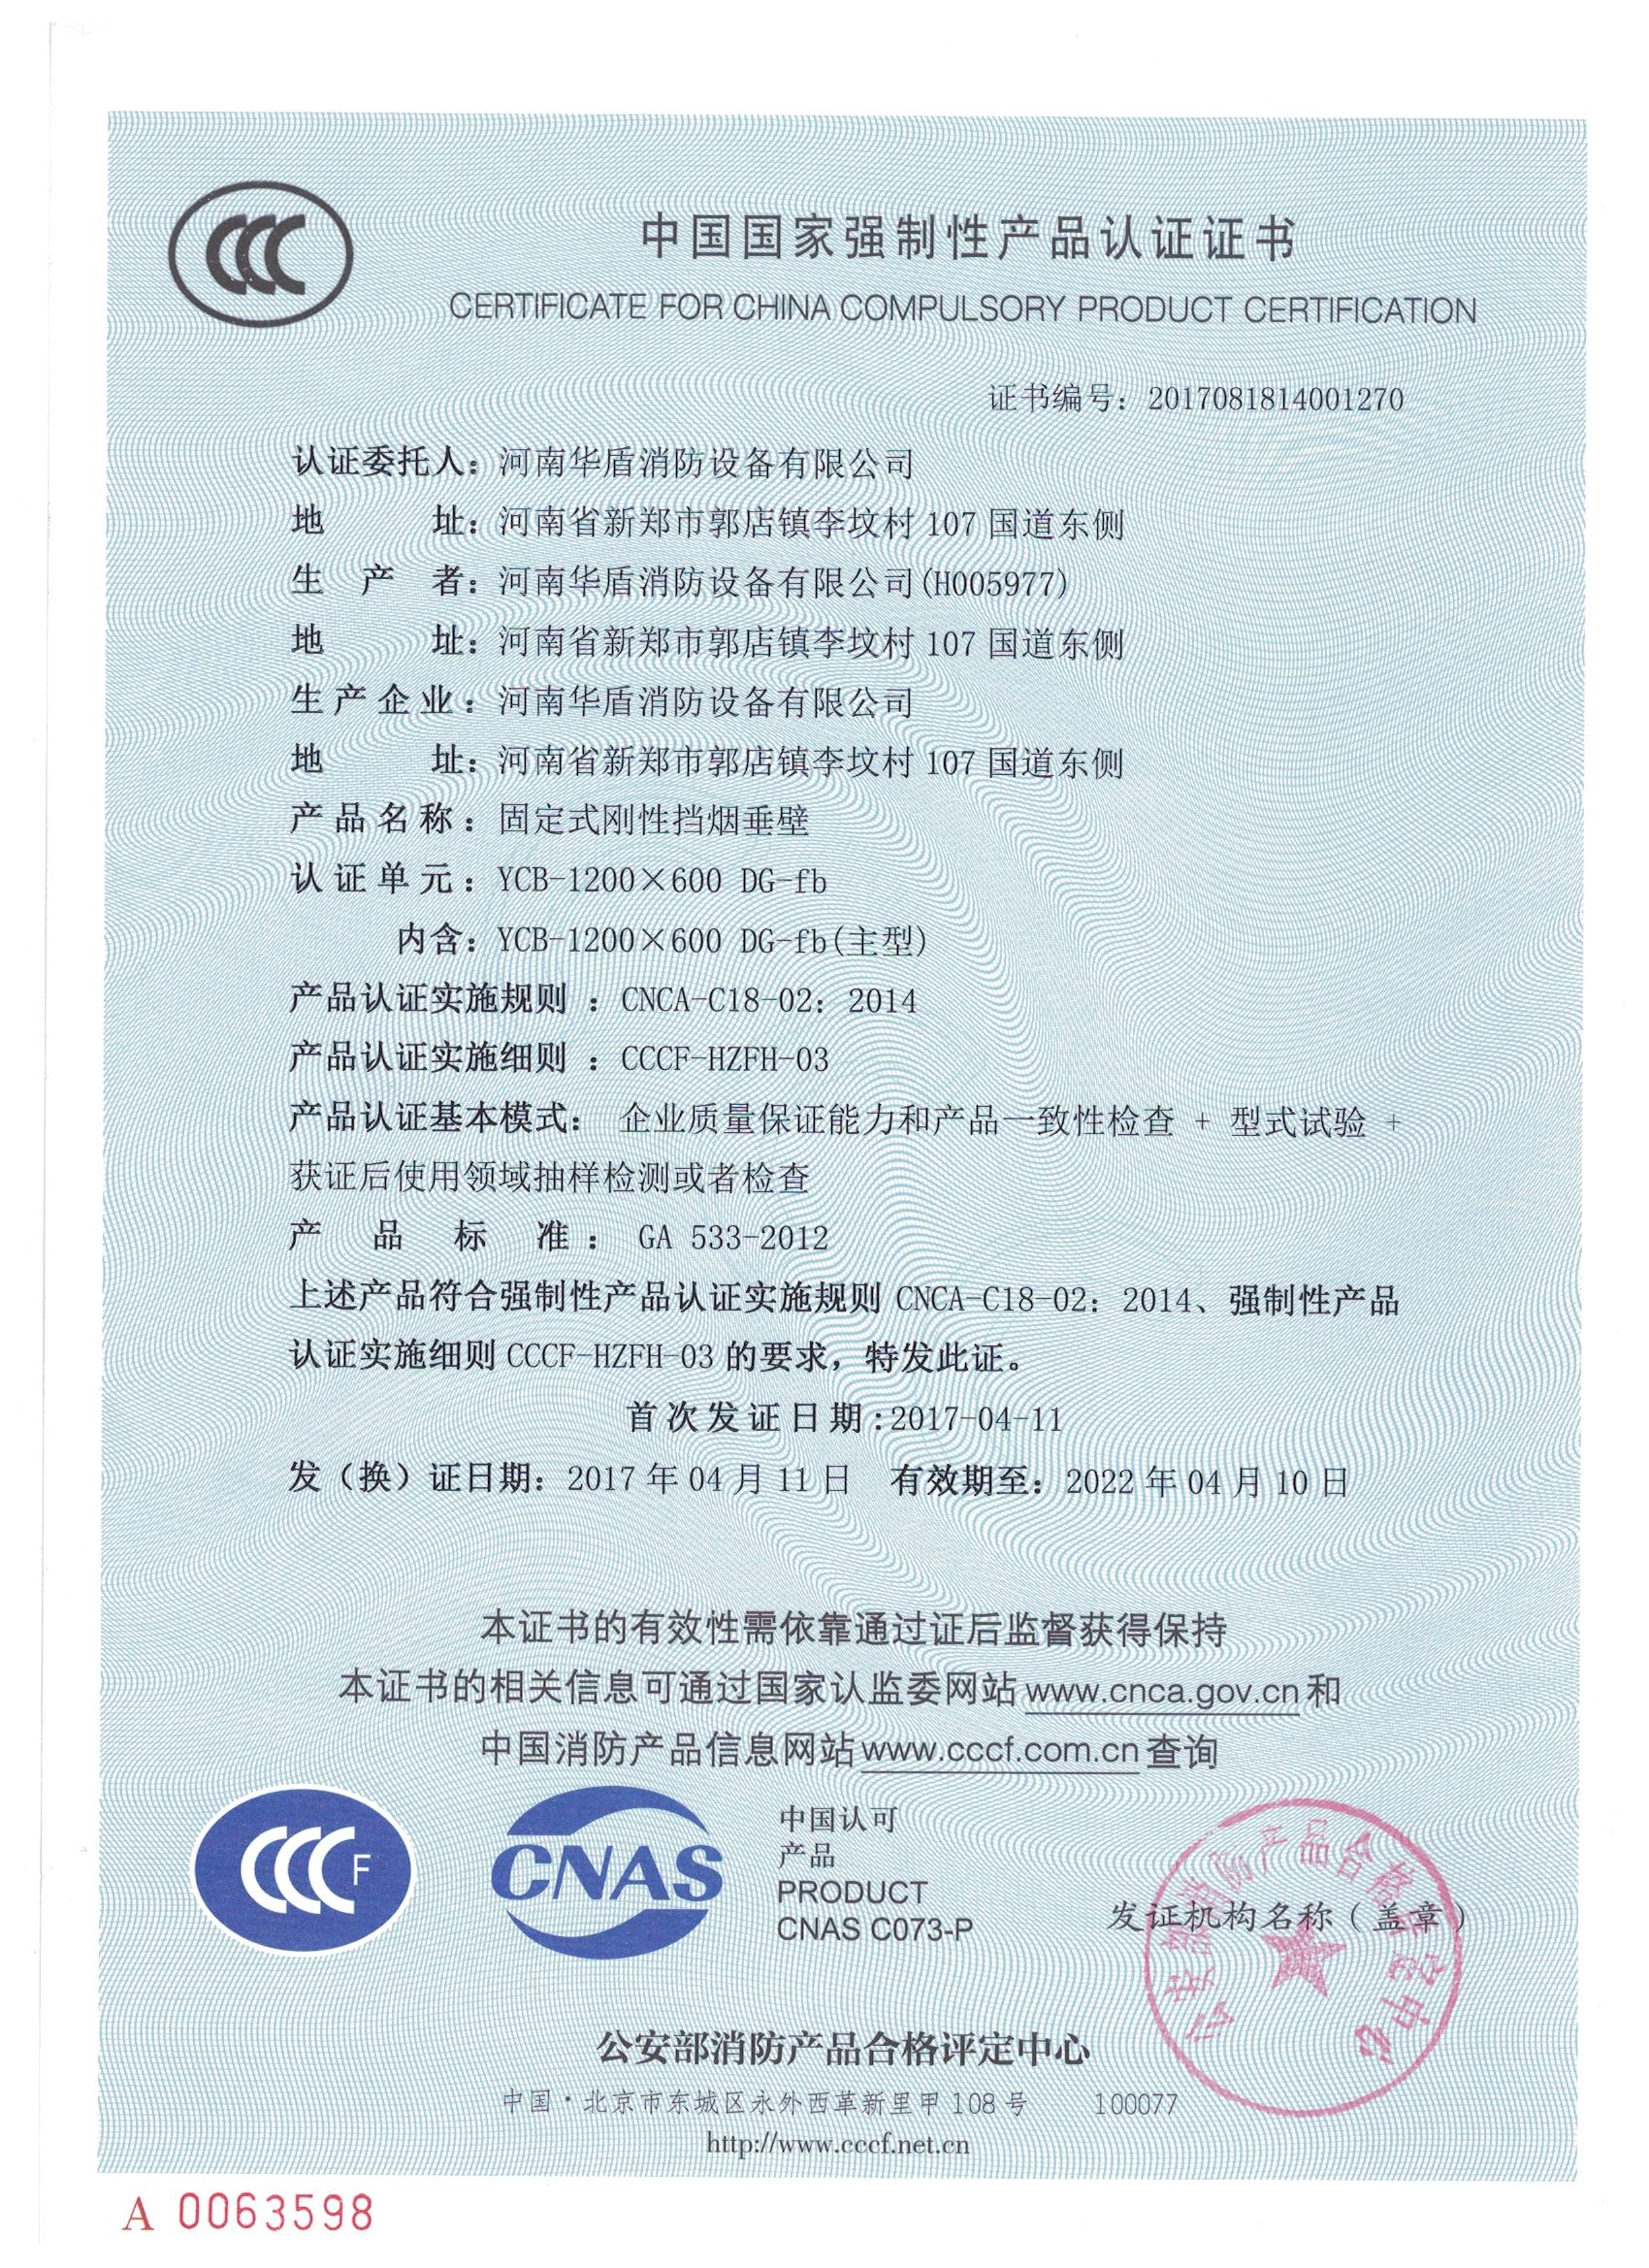 郑州YCB-1200X600 DG-fb-3C证书